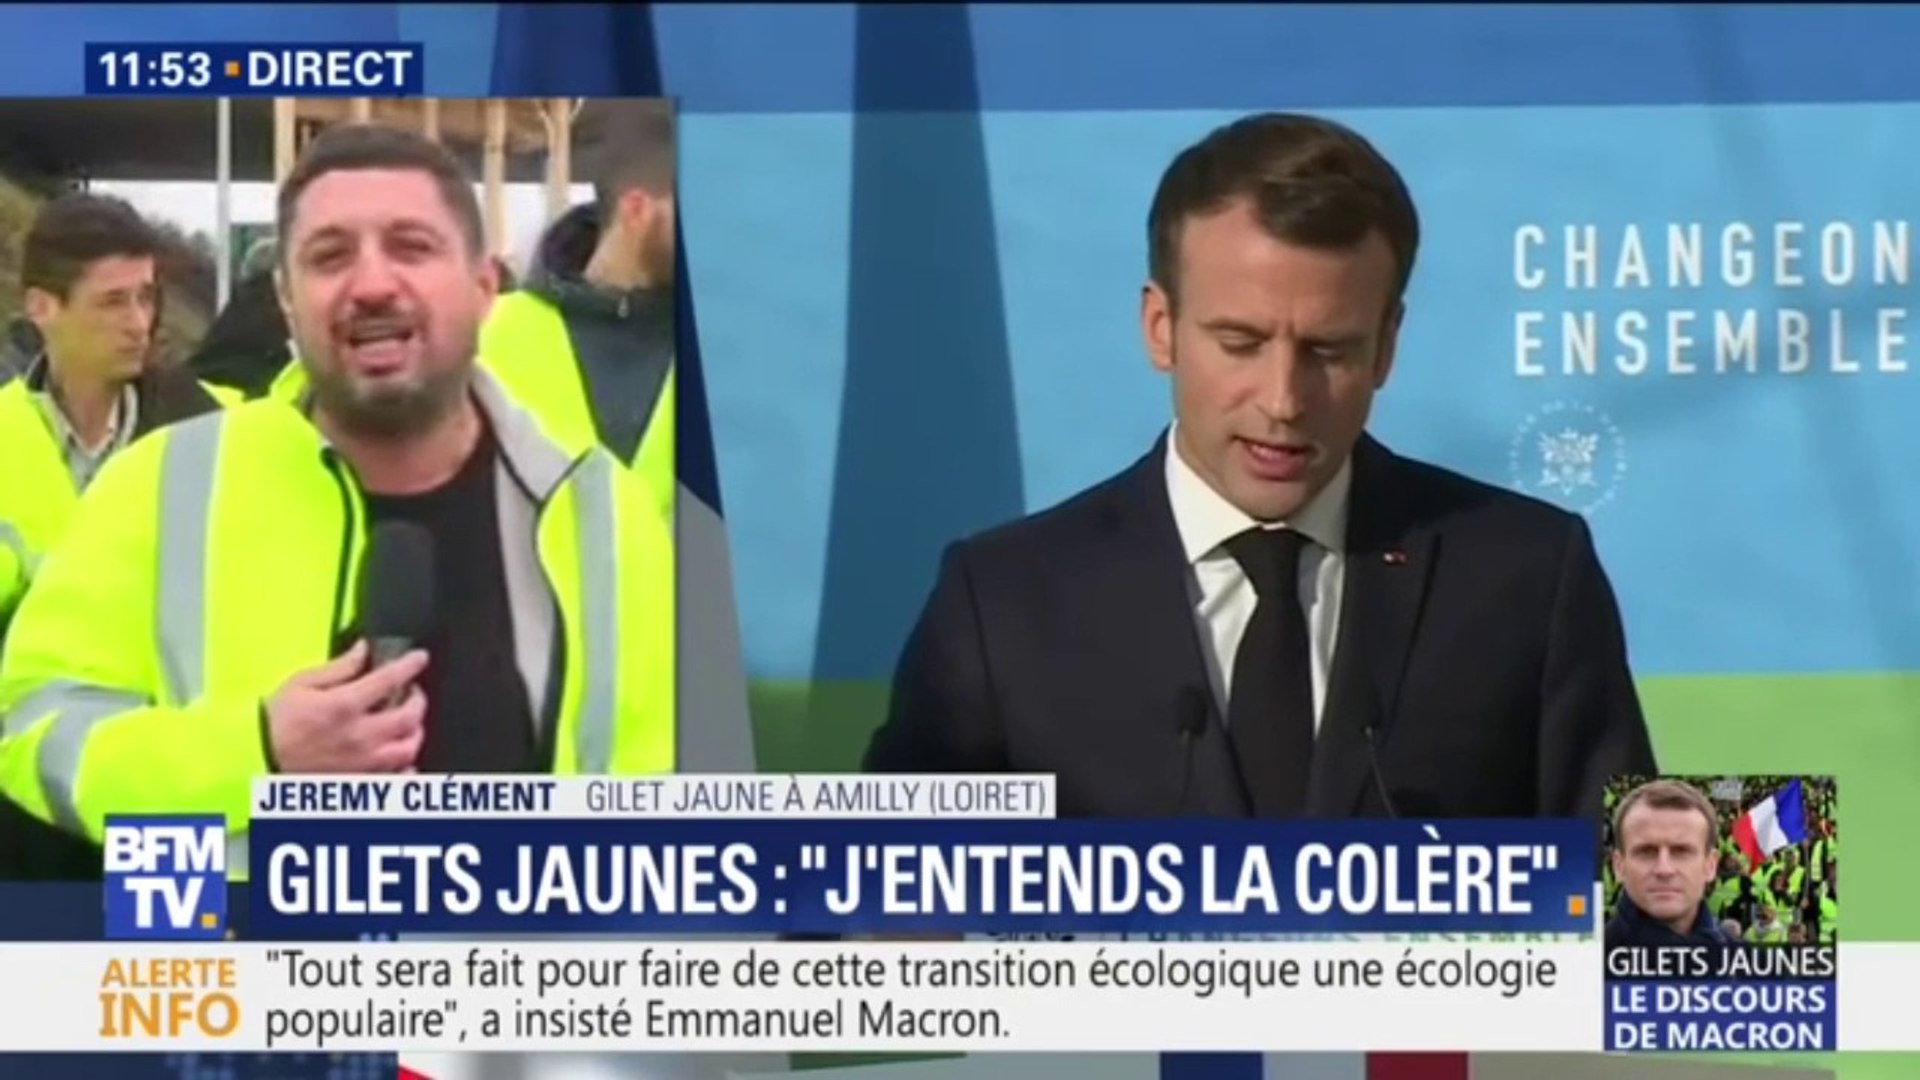 Jeremy Clément, gilet jaune réagit au discours du Président "vous avez  oublié la réforme qui nous tient le plus à coeur, réformer le gouvernement"  - Vidéo Dailymotion